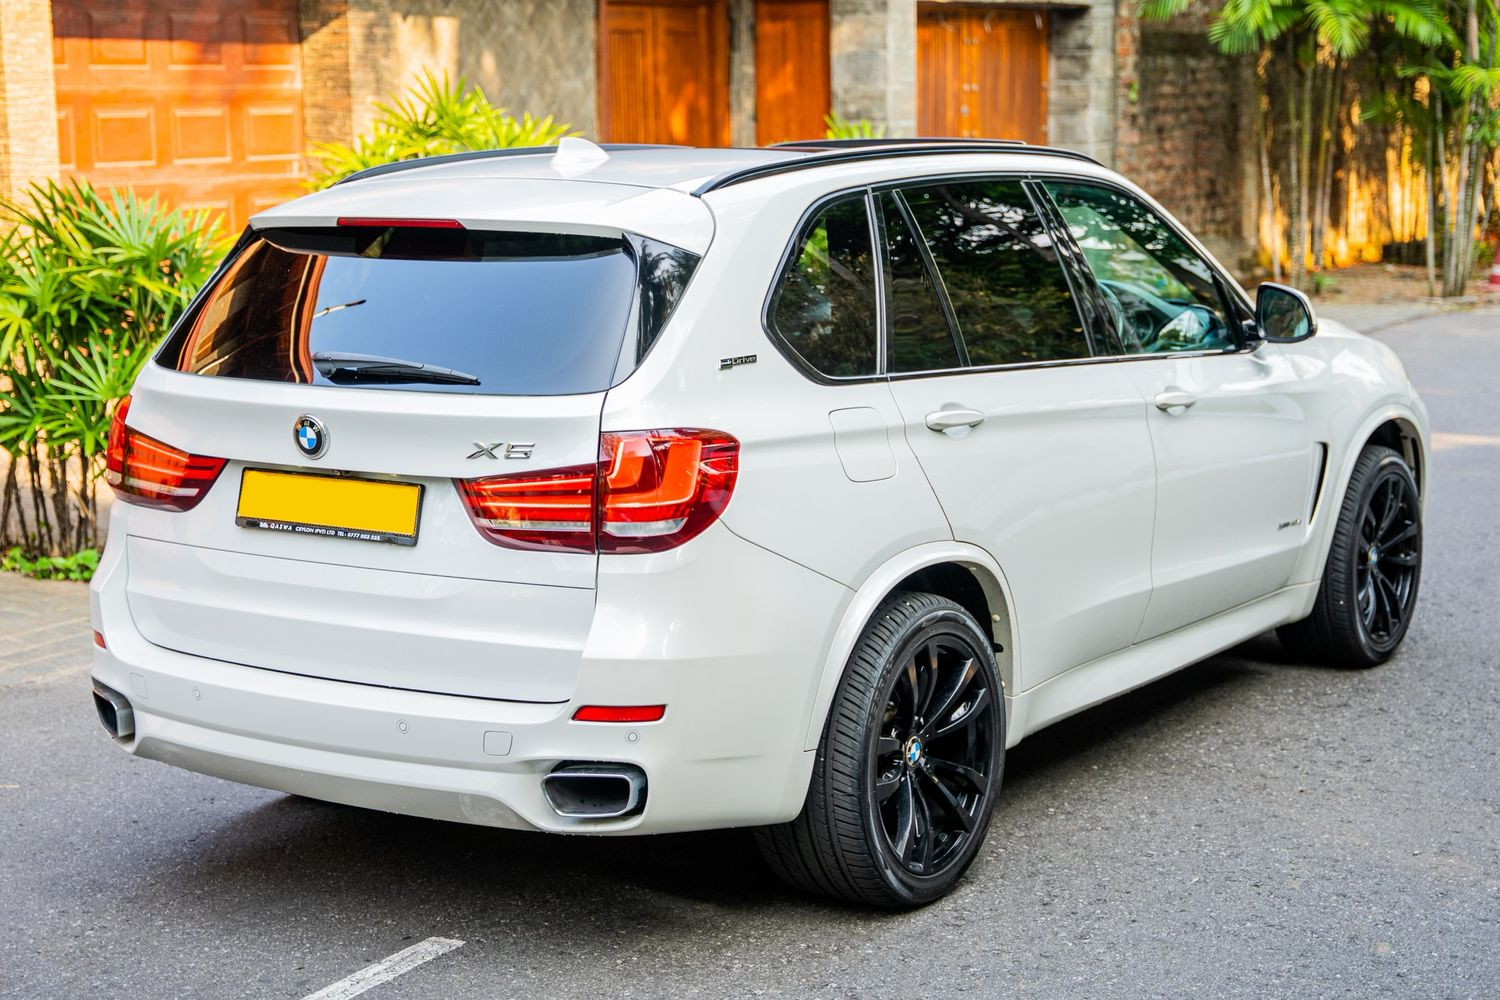 BMW X5 rear + side view